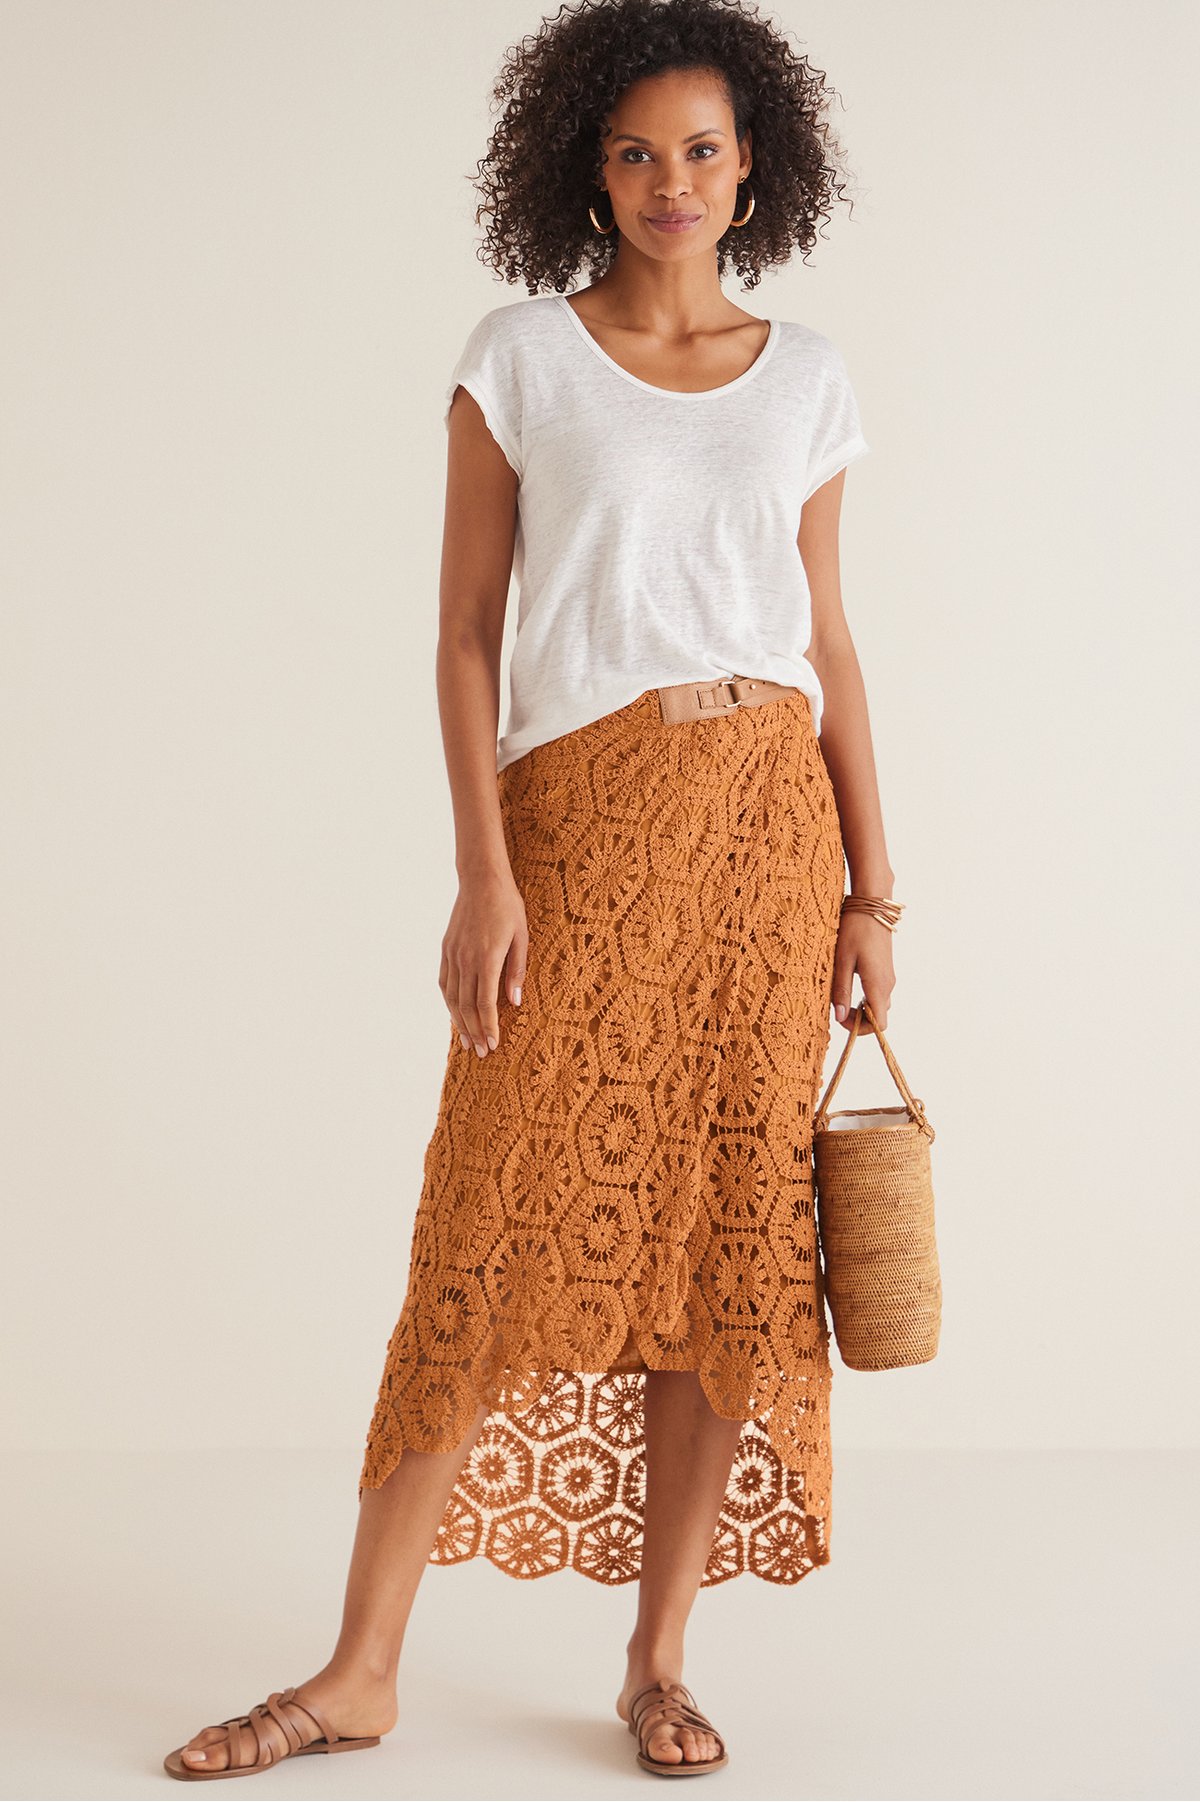 Women's Semsi Crochet Skirt by Soft Surroundings, in Honey Ginger size L (14-16)